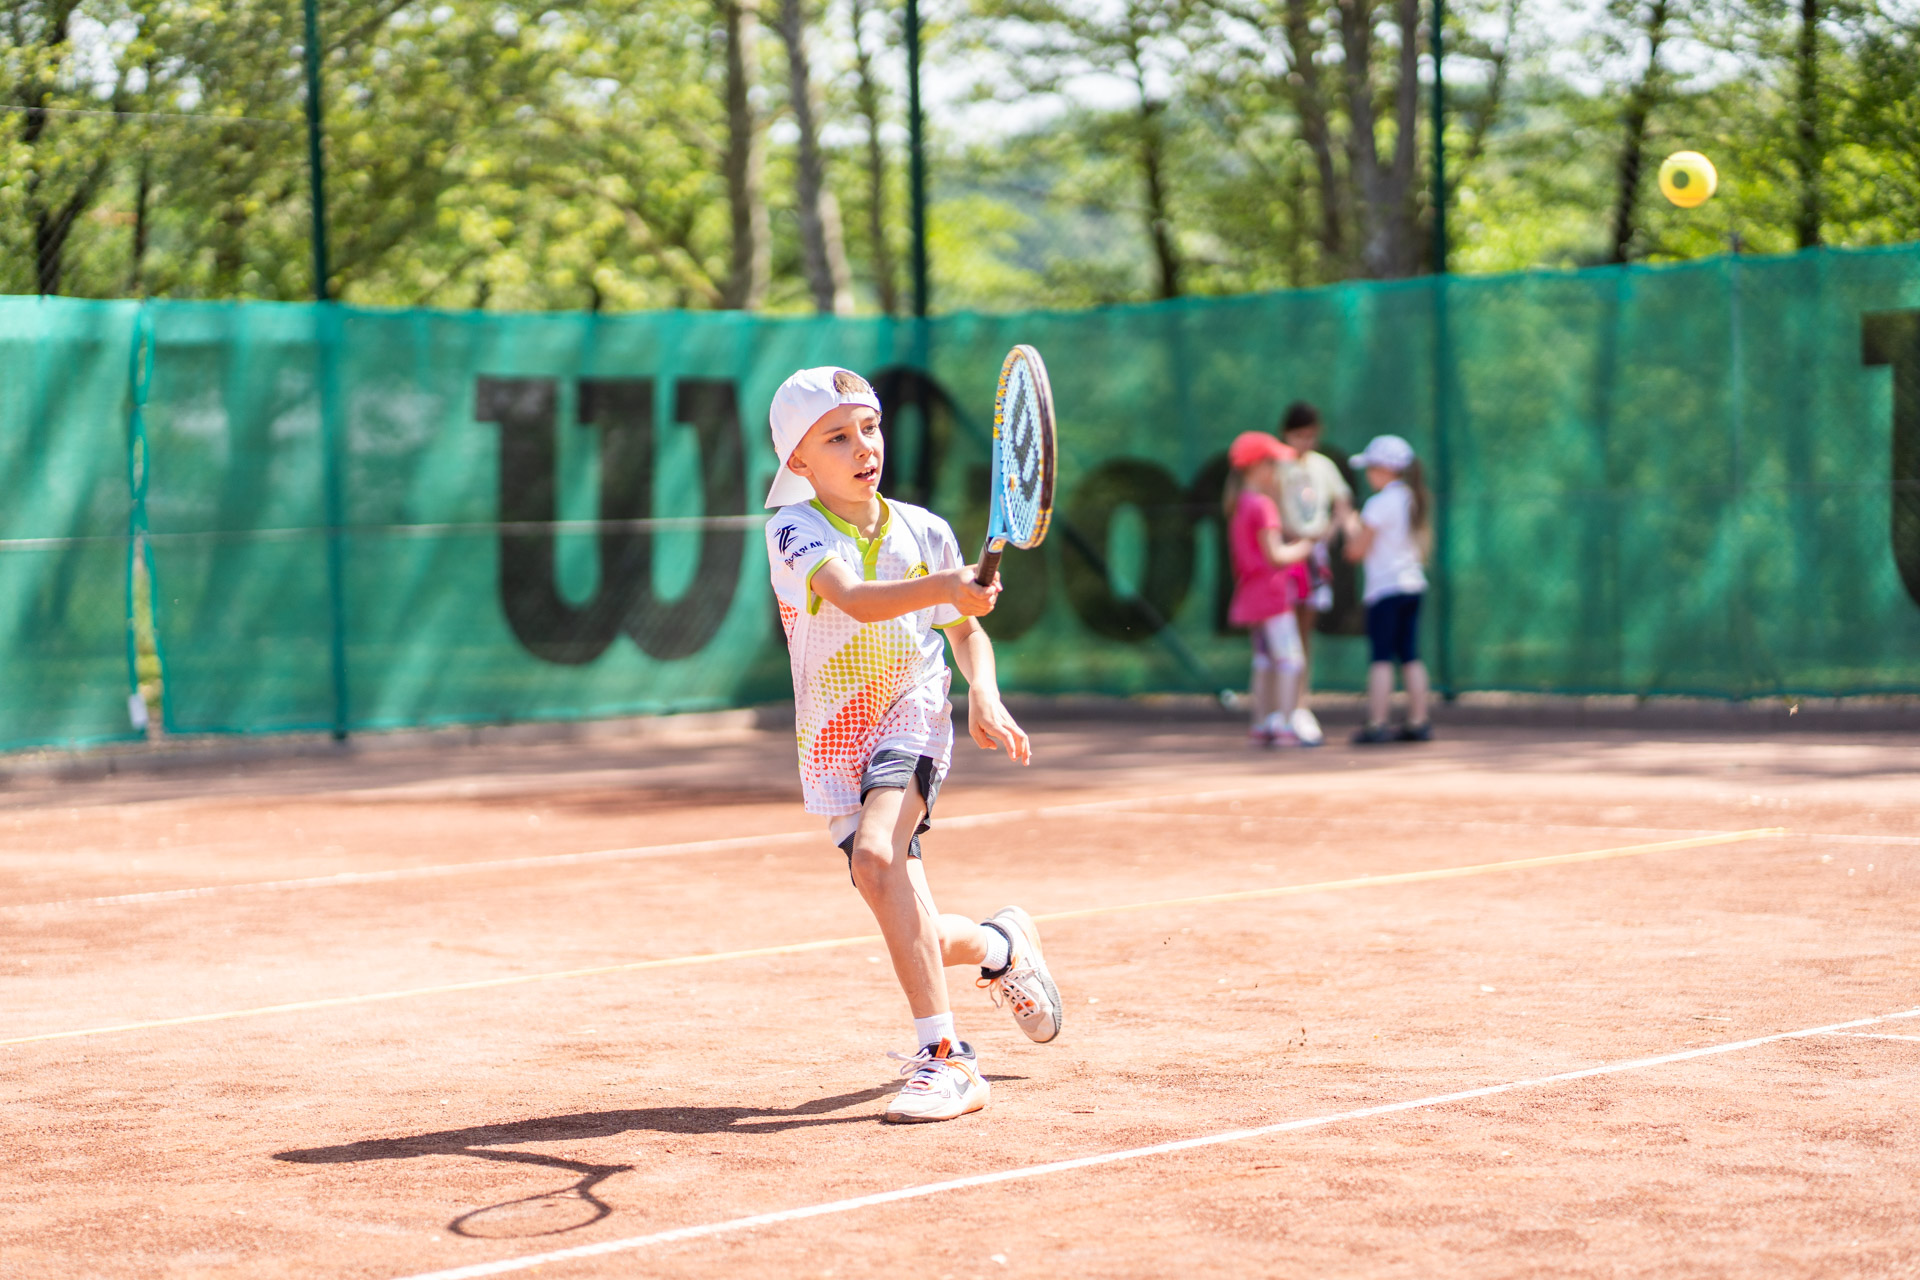 Tenisz diákolimpia megyei forduló - Kazinczy teniszpálya